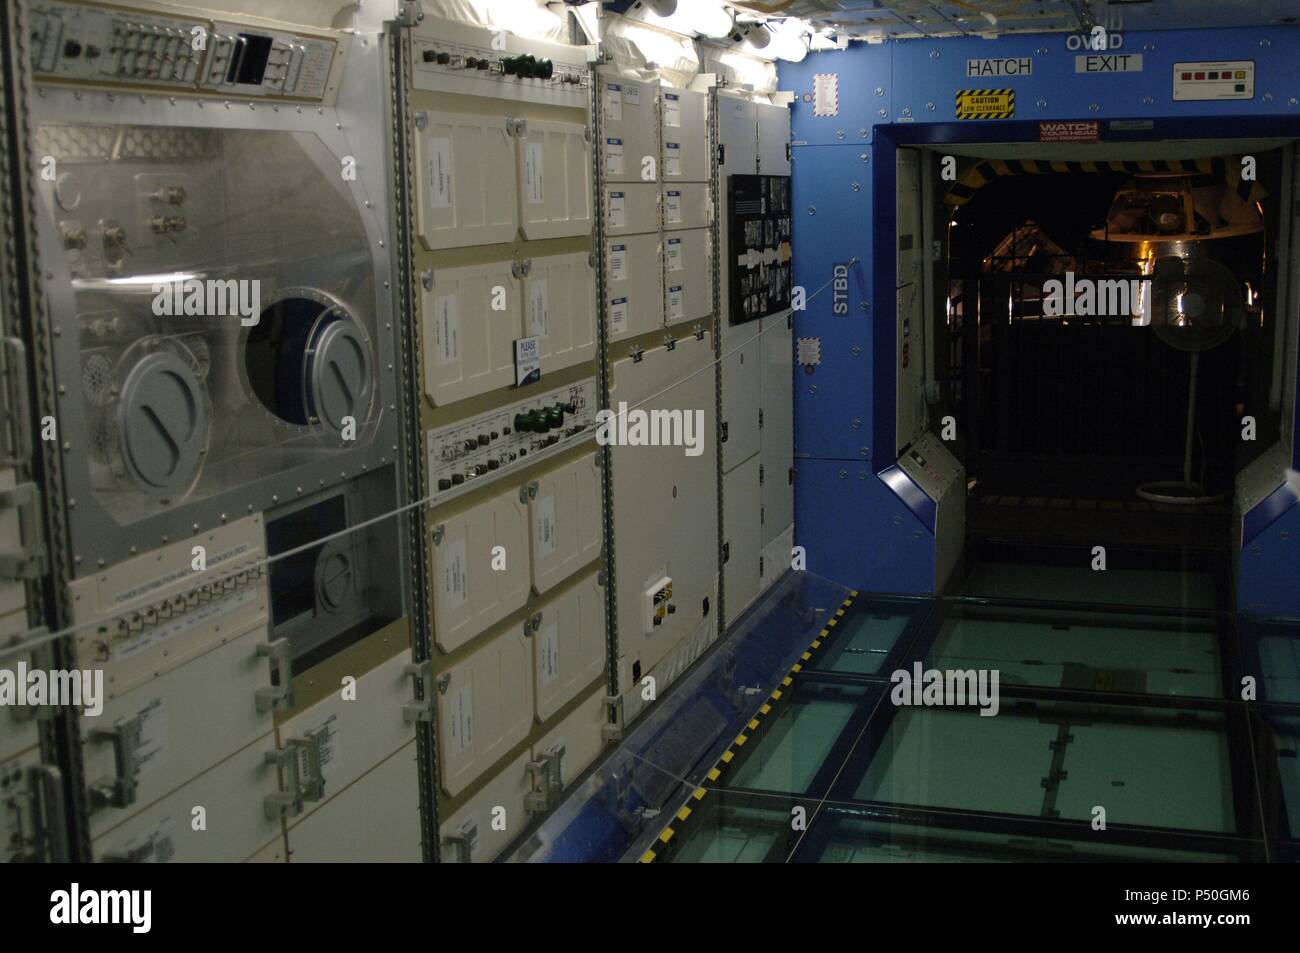 'DESTINY'. Módulo laboratorio lanzado para incorporarse a la estación espacial internacional el 7 de febrero de 2001. Museo del Vuelo. Seattle. Estado de Washington. Estados Unidos. Stock Photo